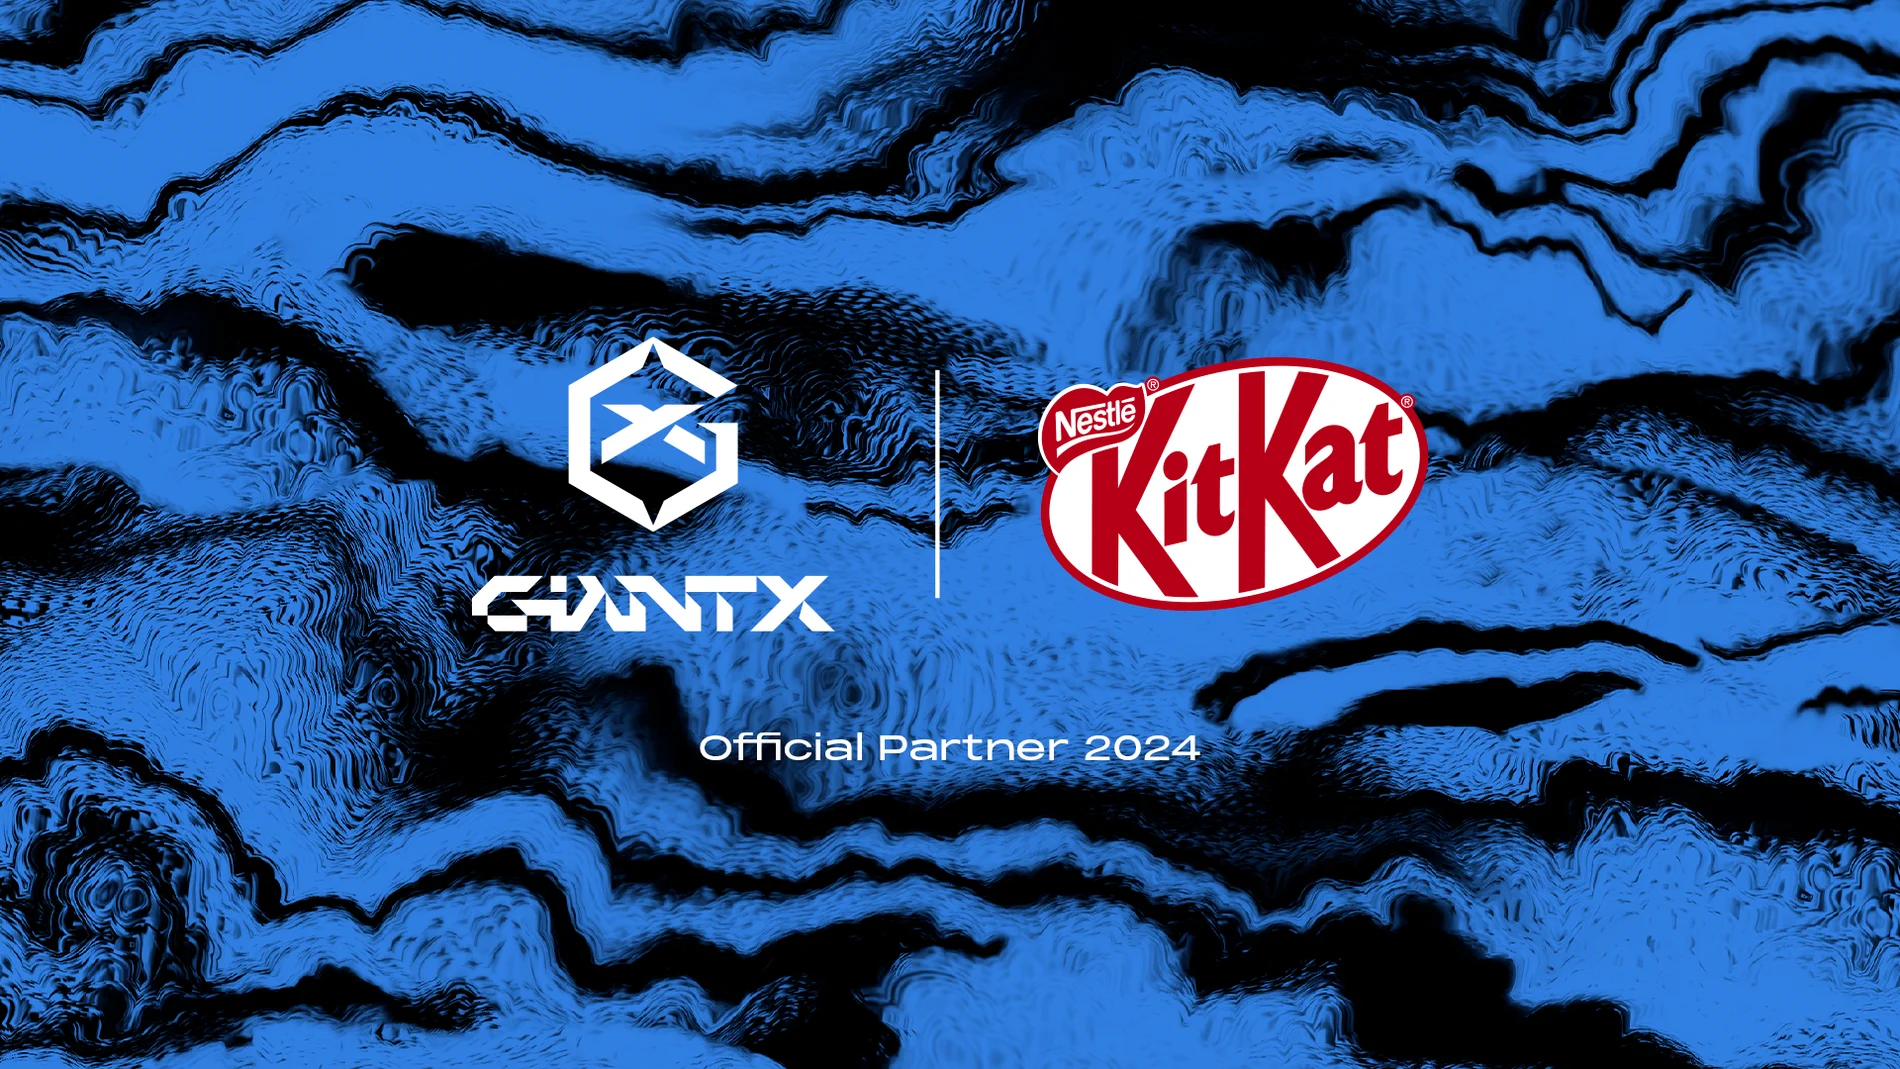 La marca de Nestlé lucirá en la manga de la camiseta en las competiciones nacionales